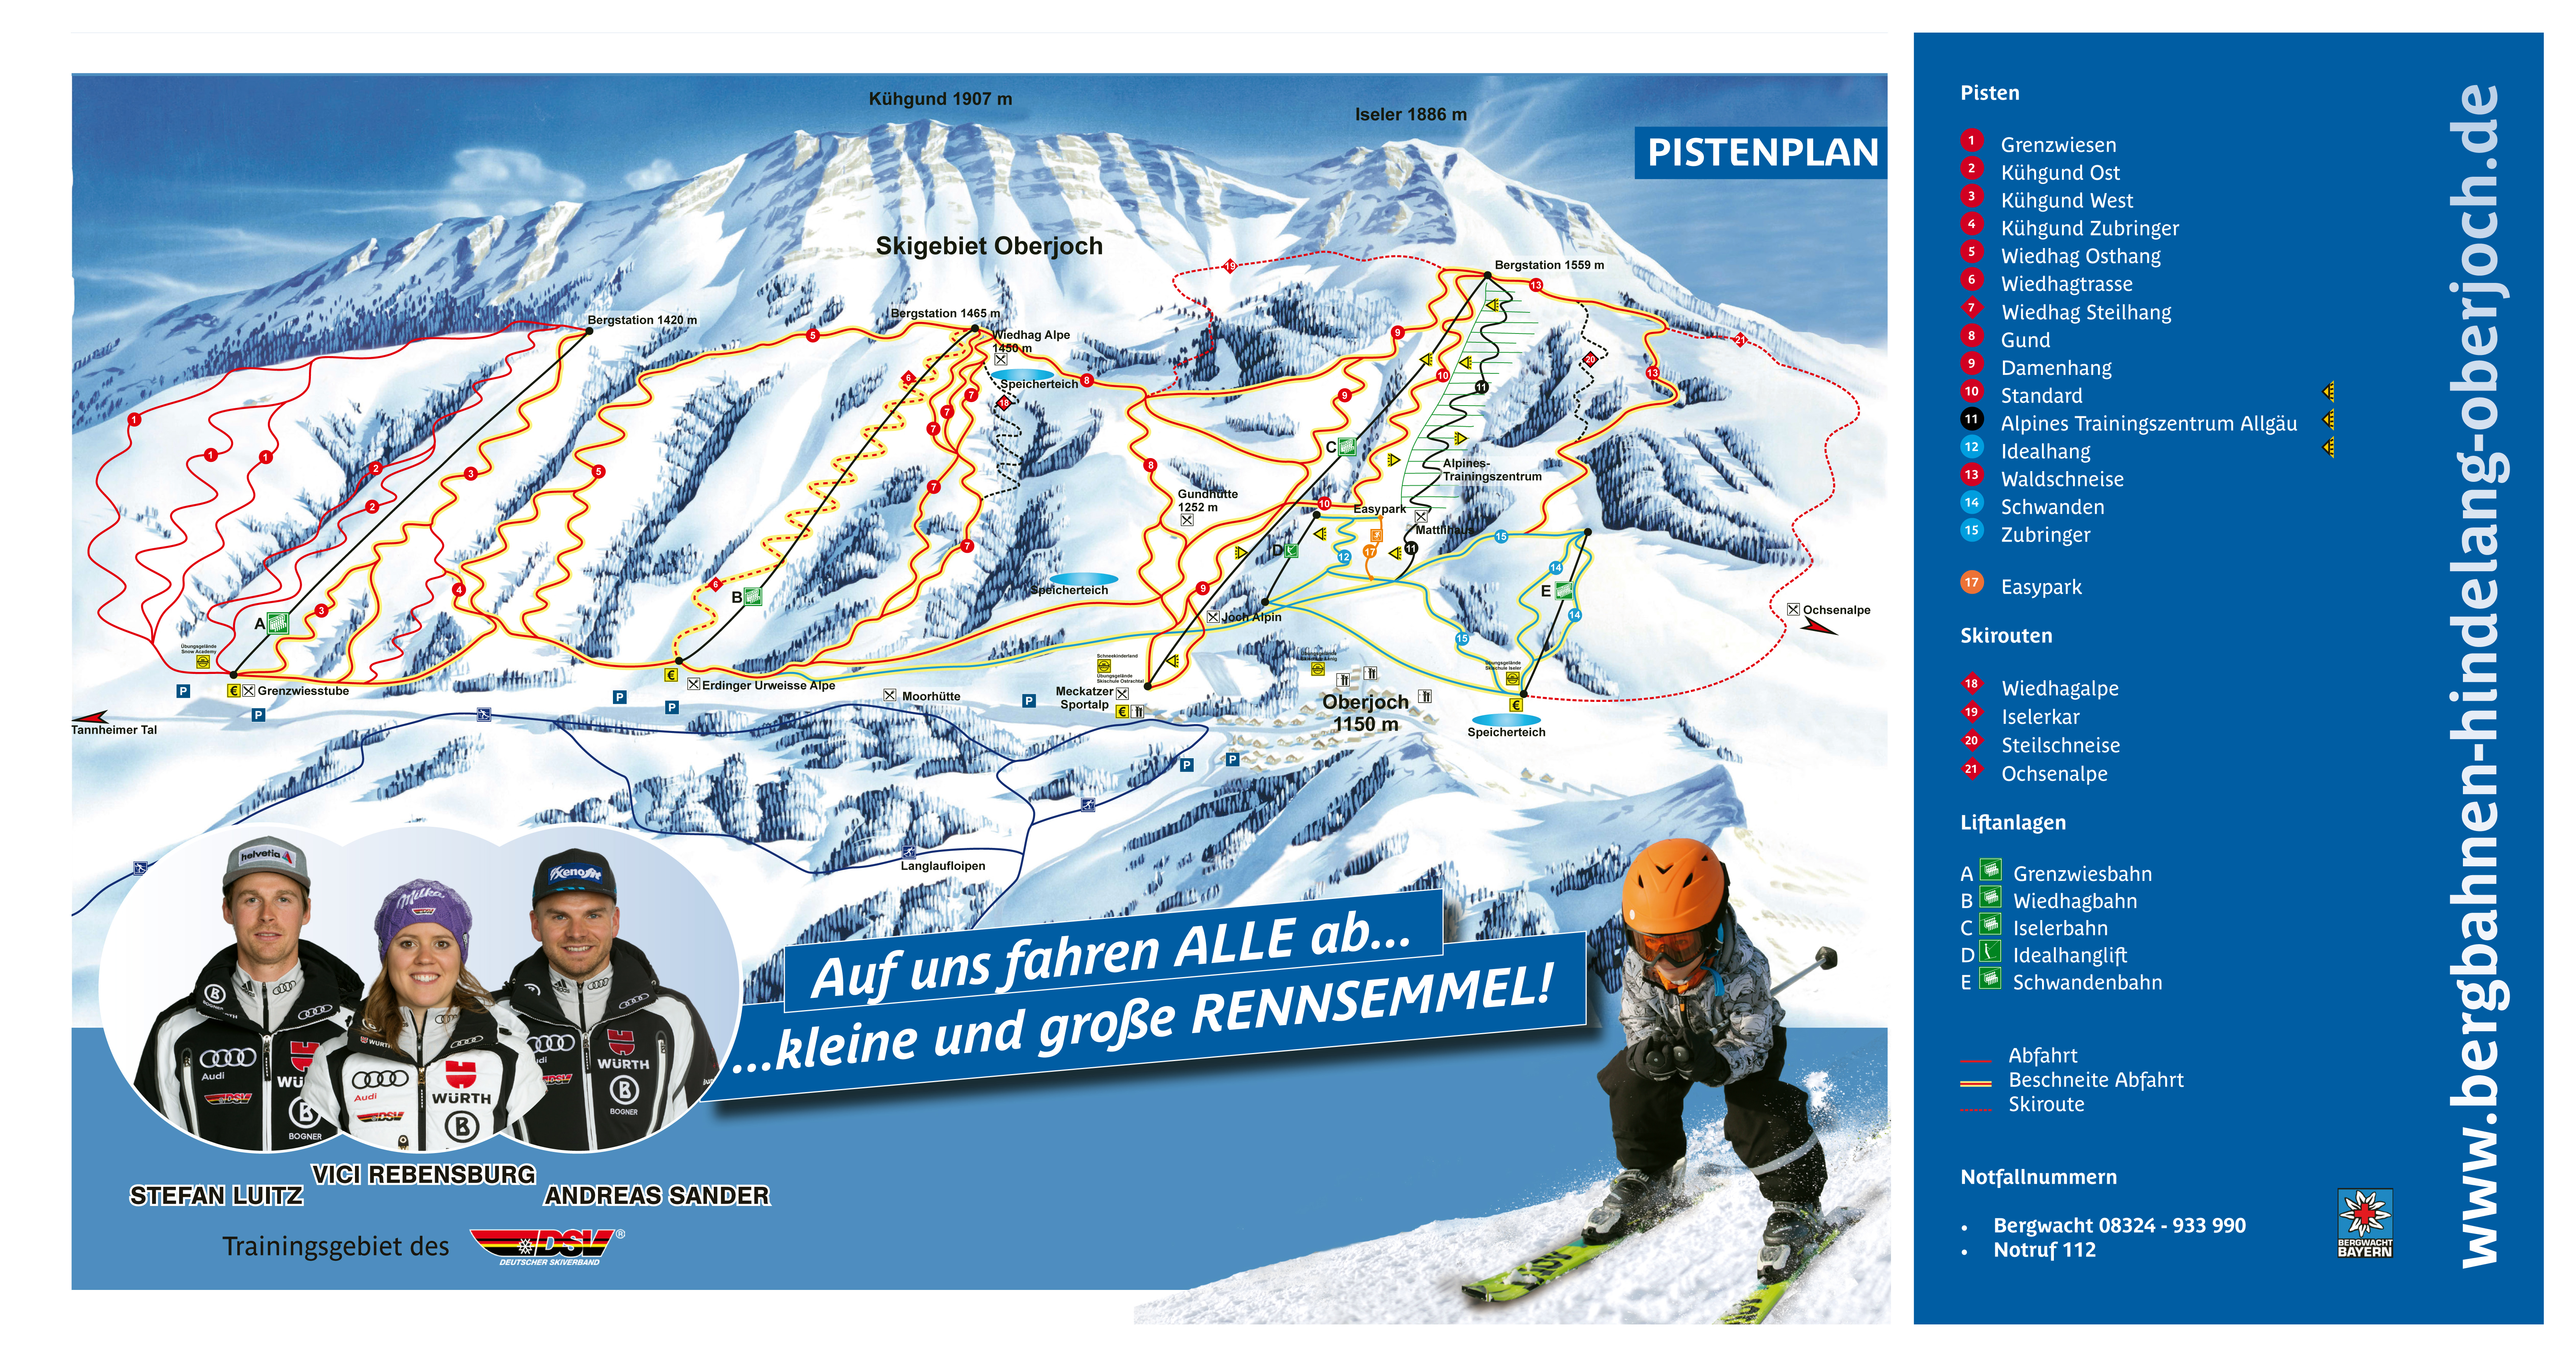 large-detailed-piste-map-of-hindelang-oberjoch-ski-resort-2018.jpg